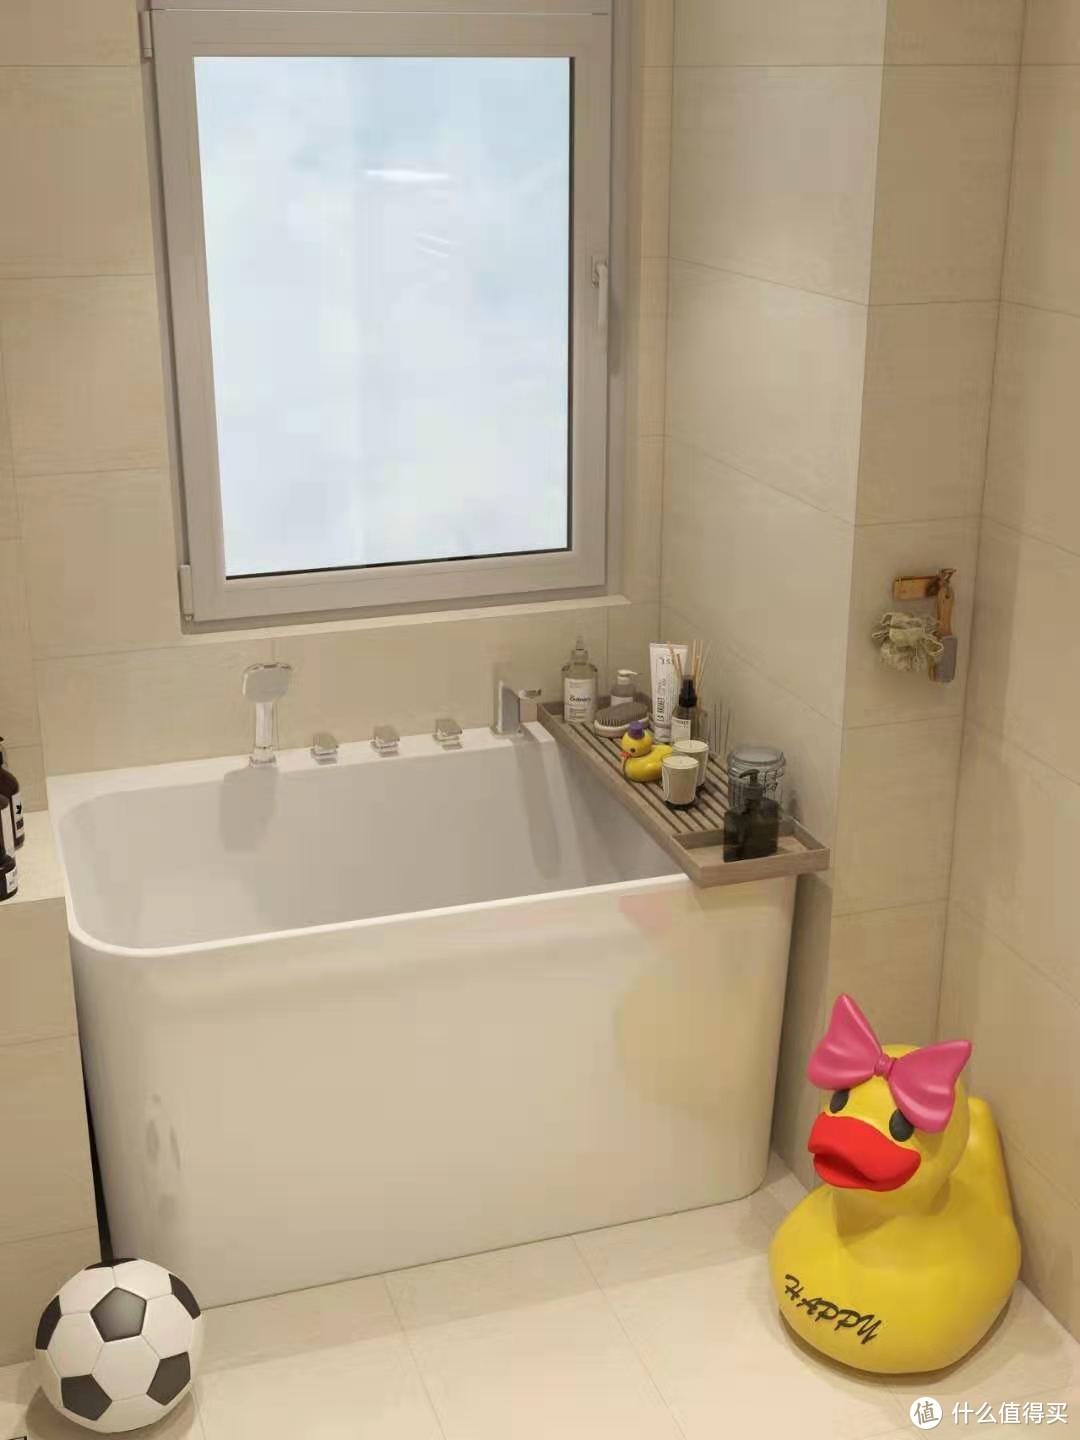 4平小浴室也能实现泡澡自.由